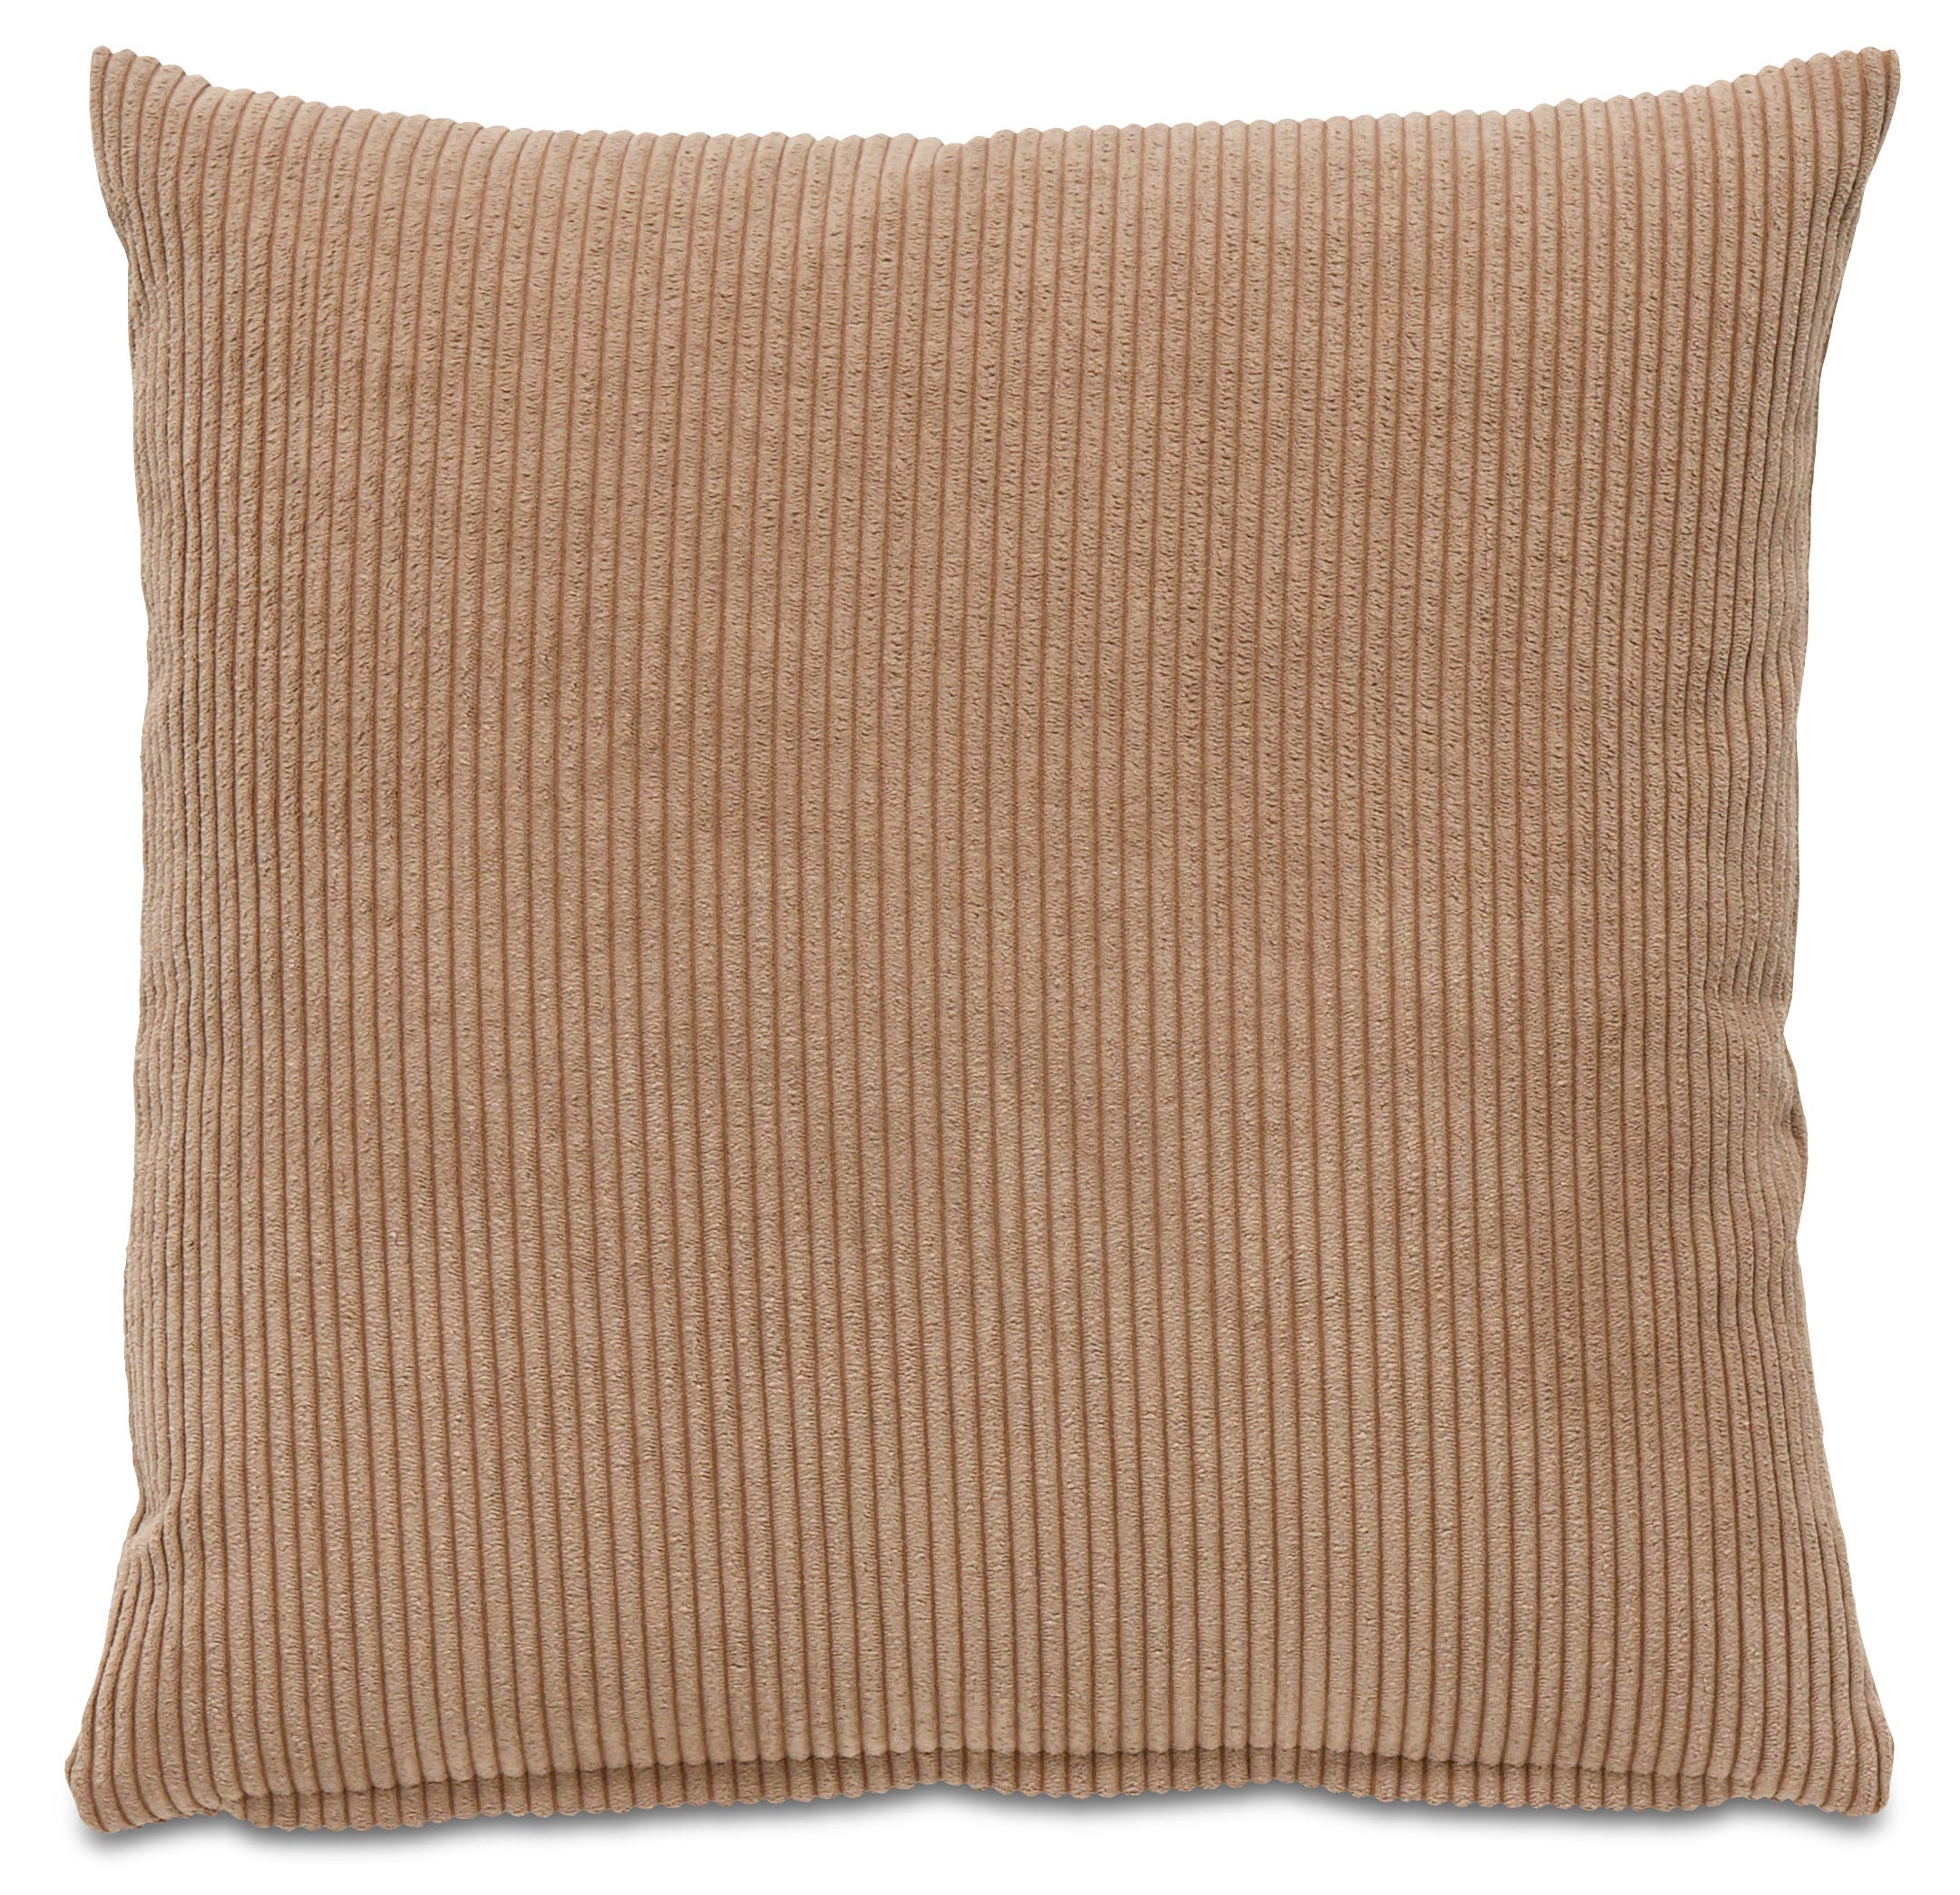 Cord cushion